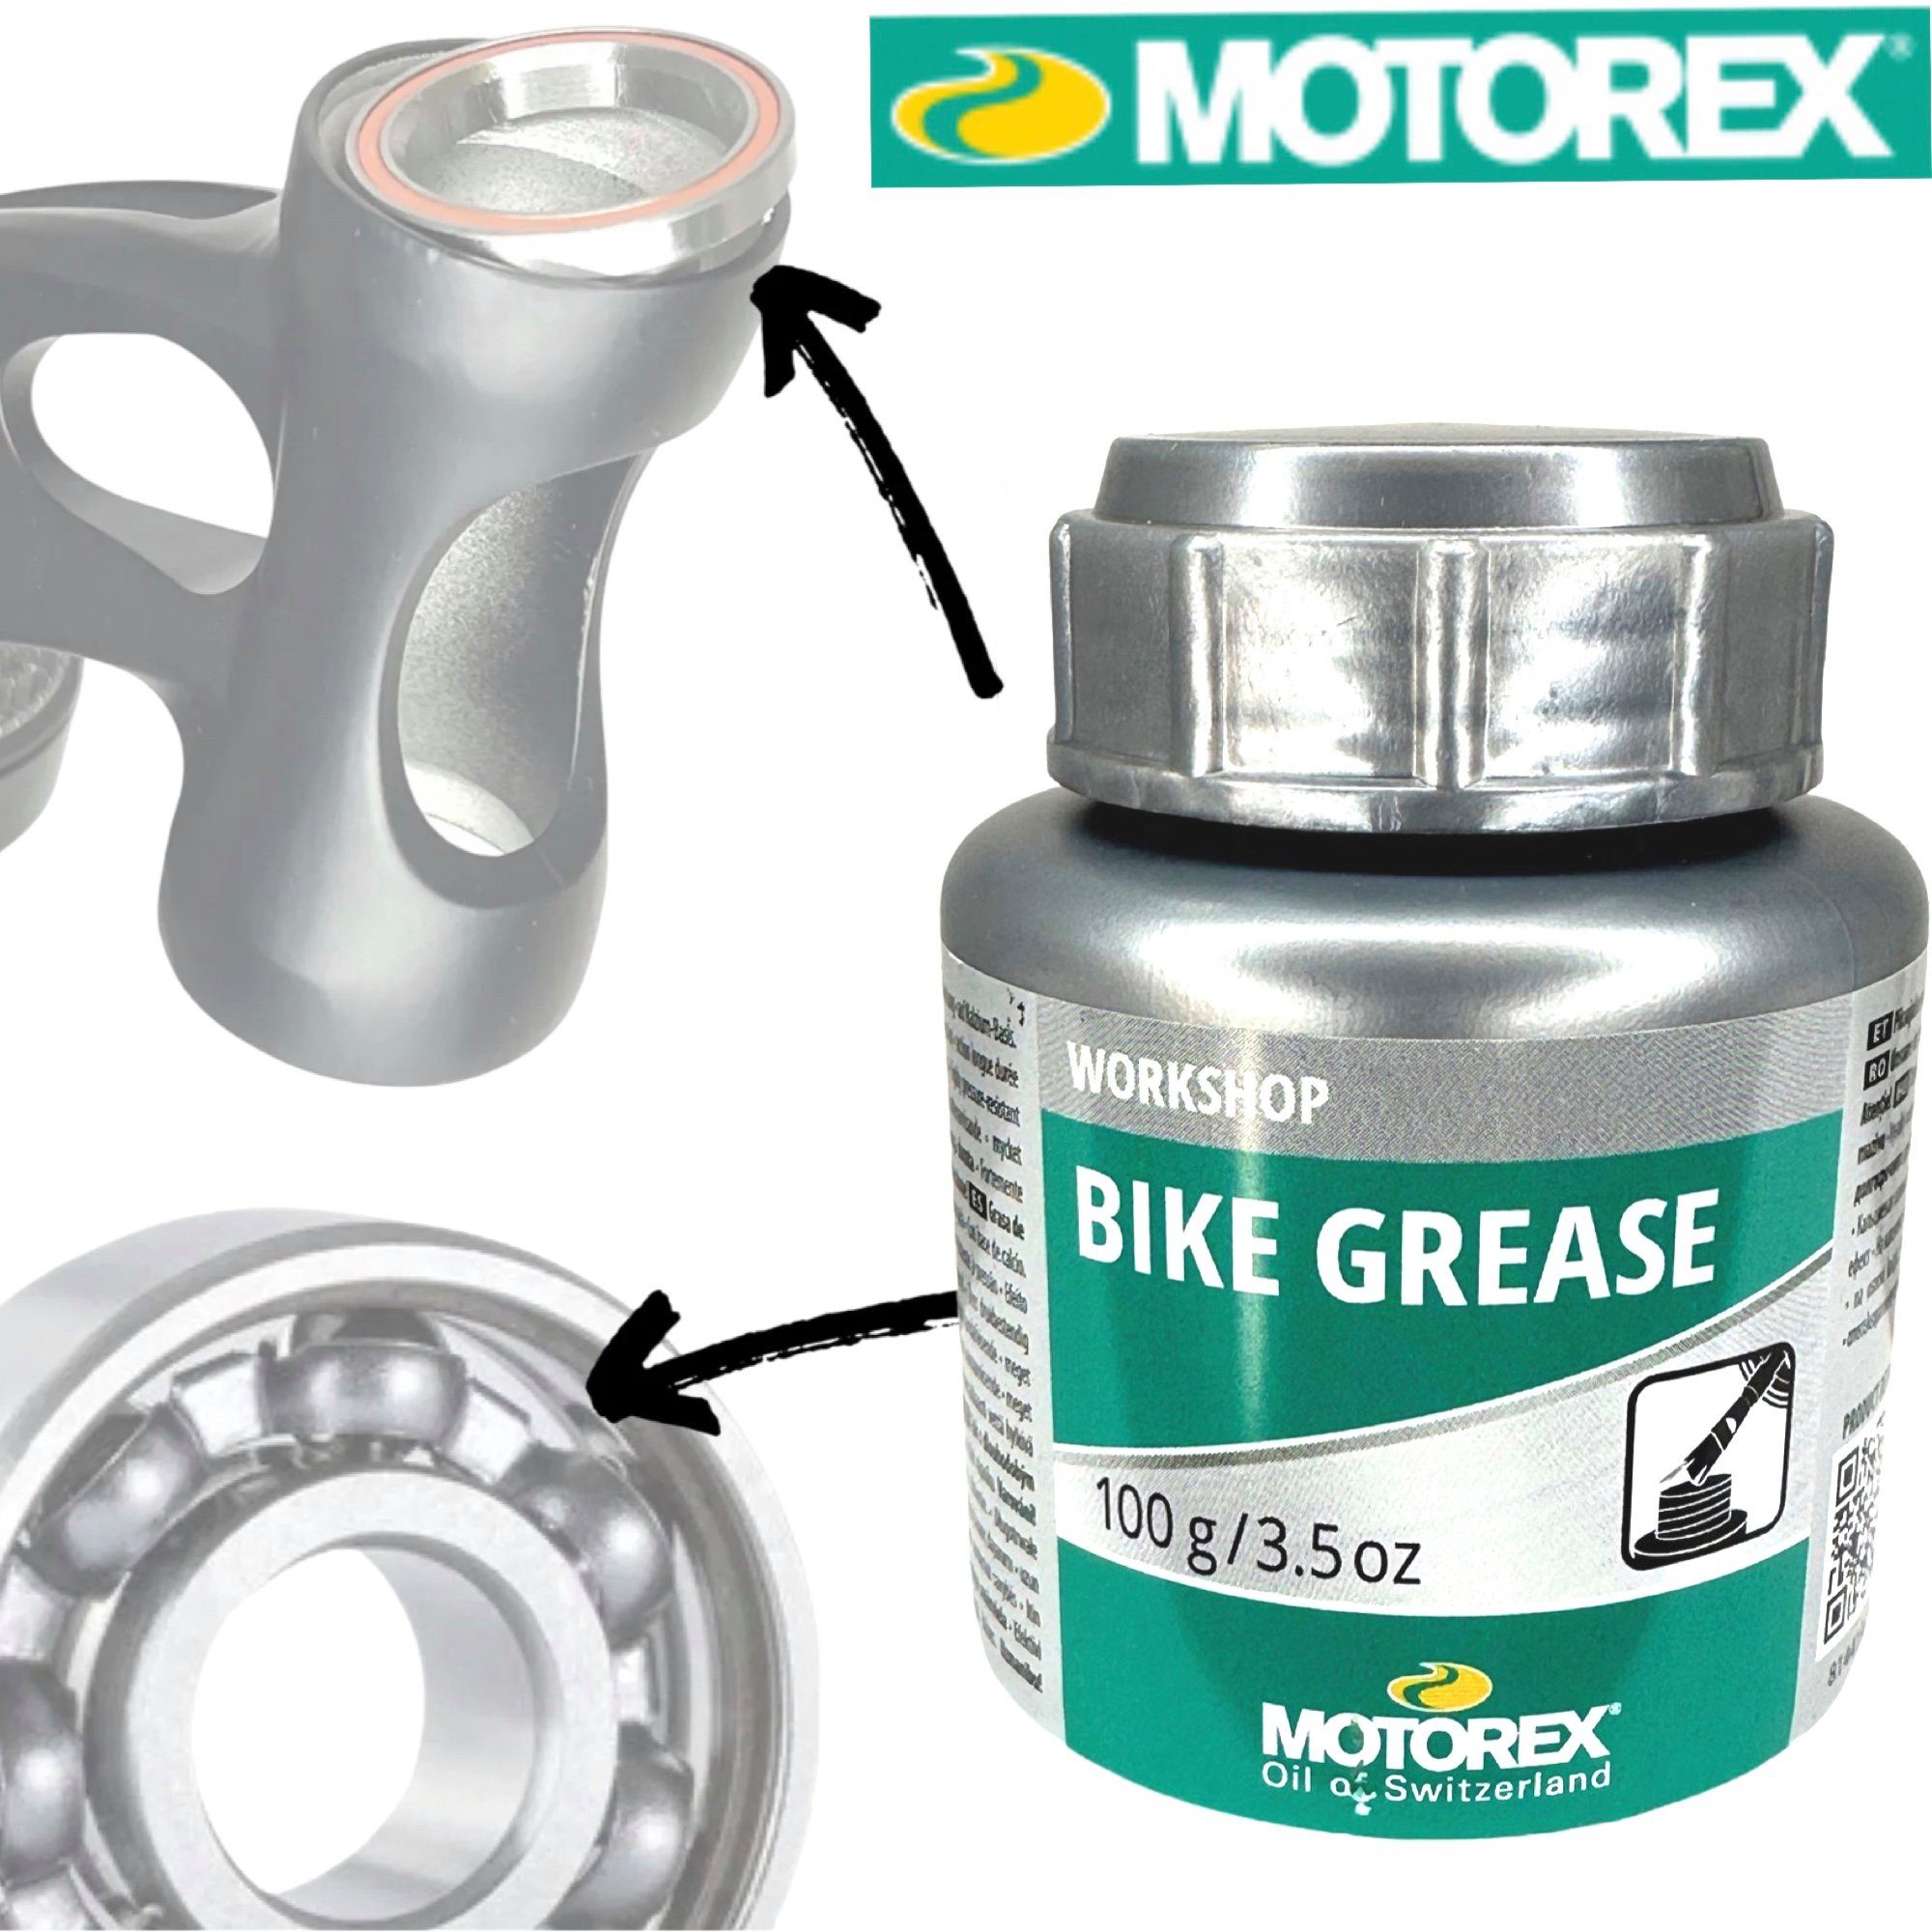 Motorex Fahrrad-Montageständer Motorex Bike Grease Fahrrad Werkstatt Fett Dose mit Pinsel 100g